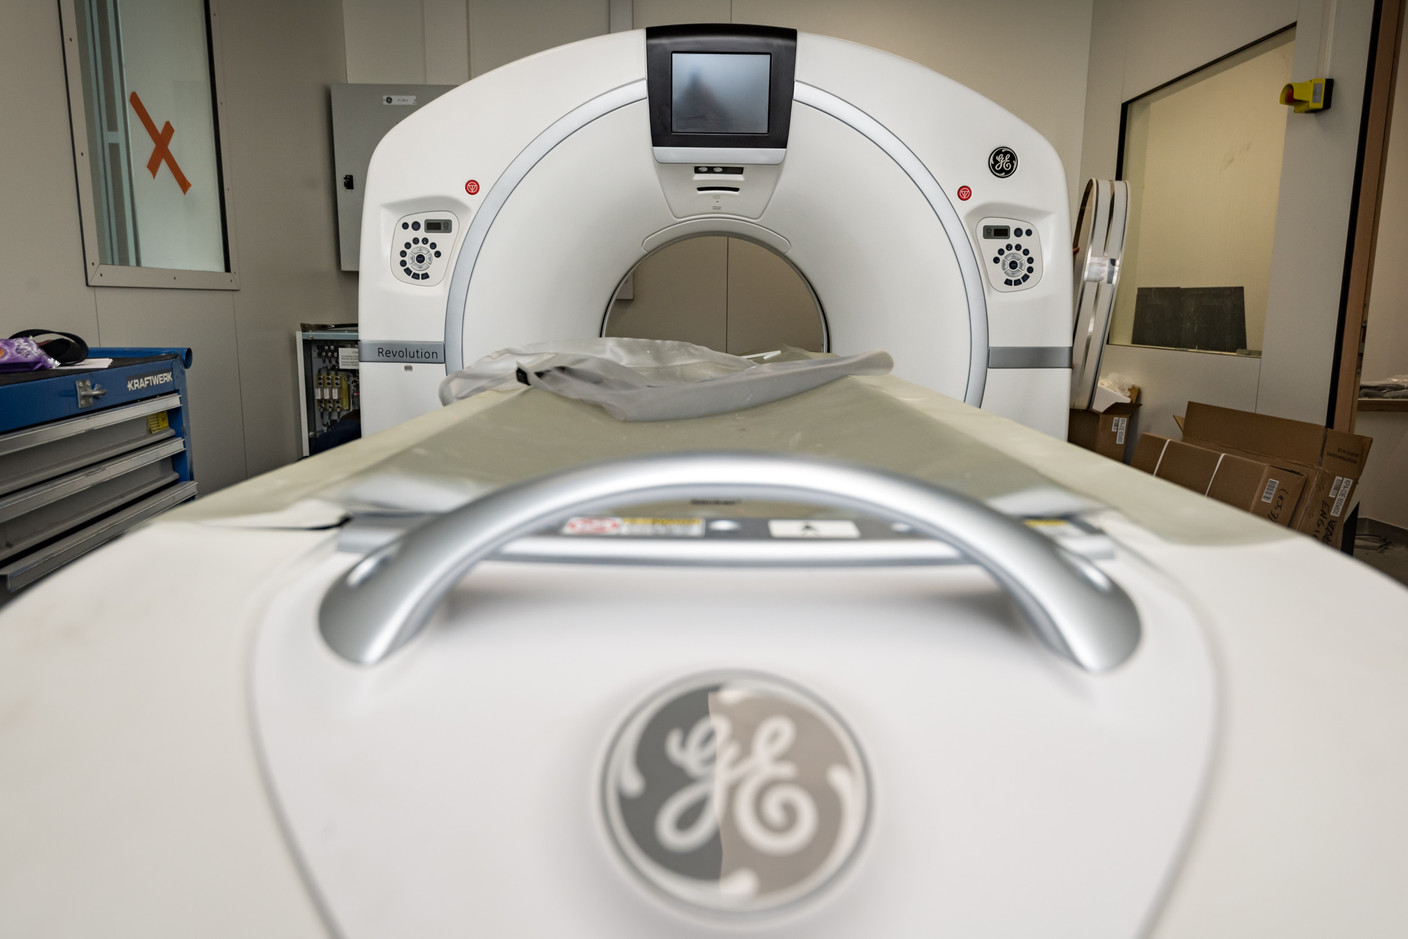 Un scanner dédié aux patients Covid-19 a été acheté en mars. À l’extérieur jusqu’ici, il vient juste d’être ramené au sein de l’unité Covid. (Photo: Nader Ghavami / Maison Moderne)